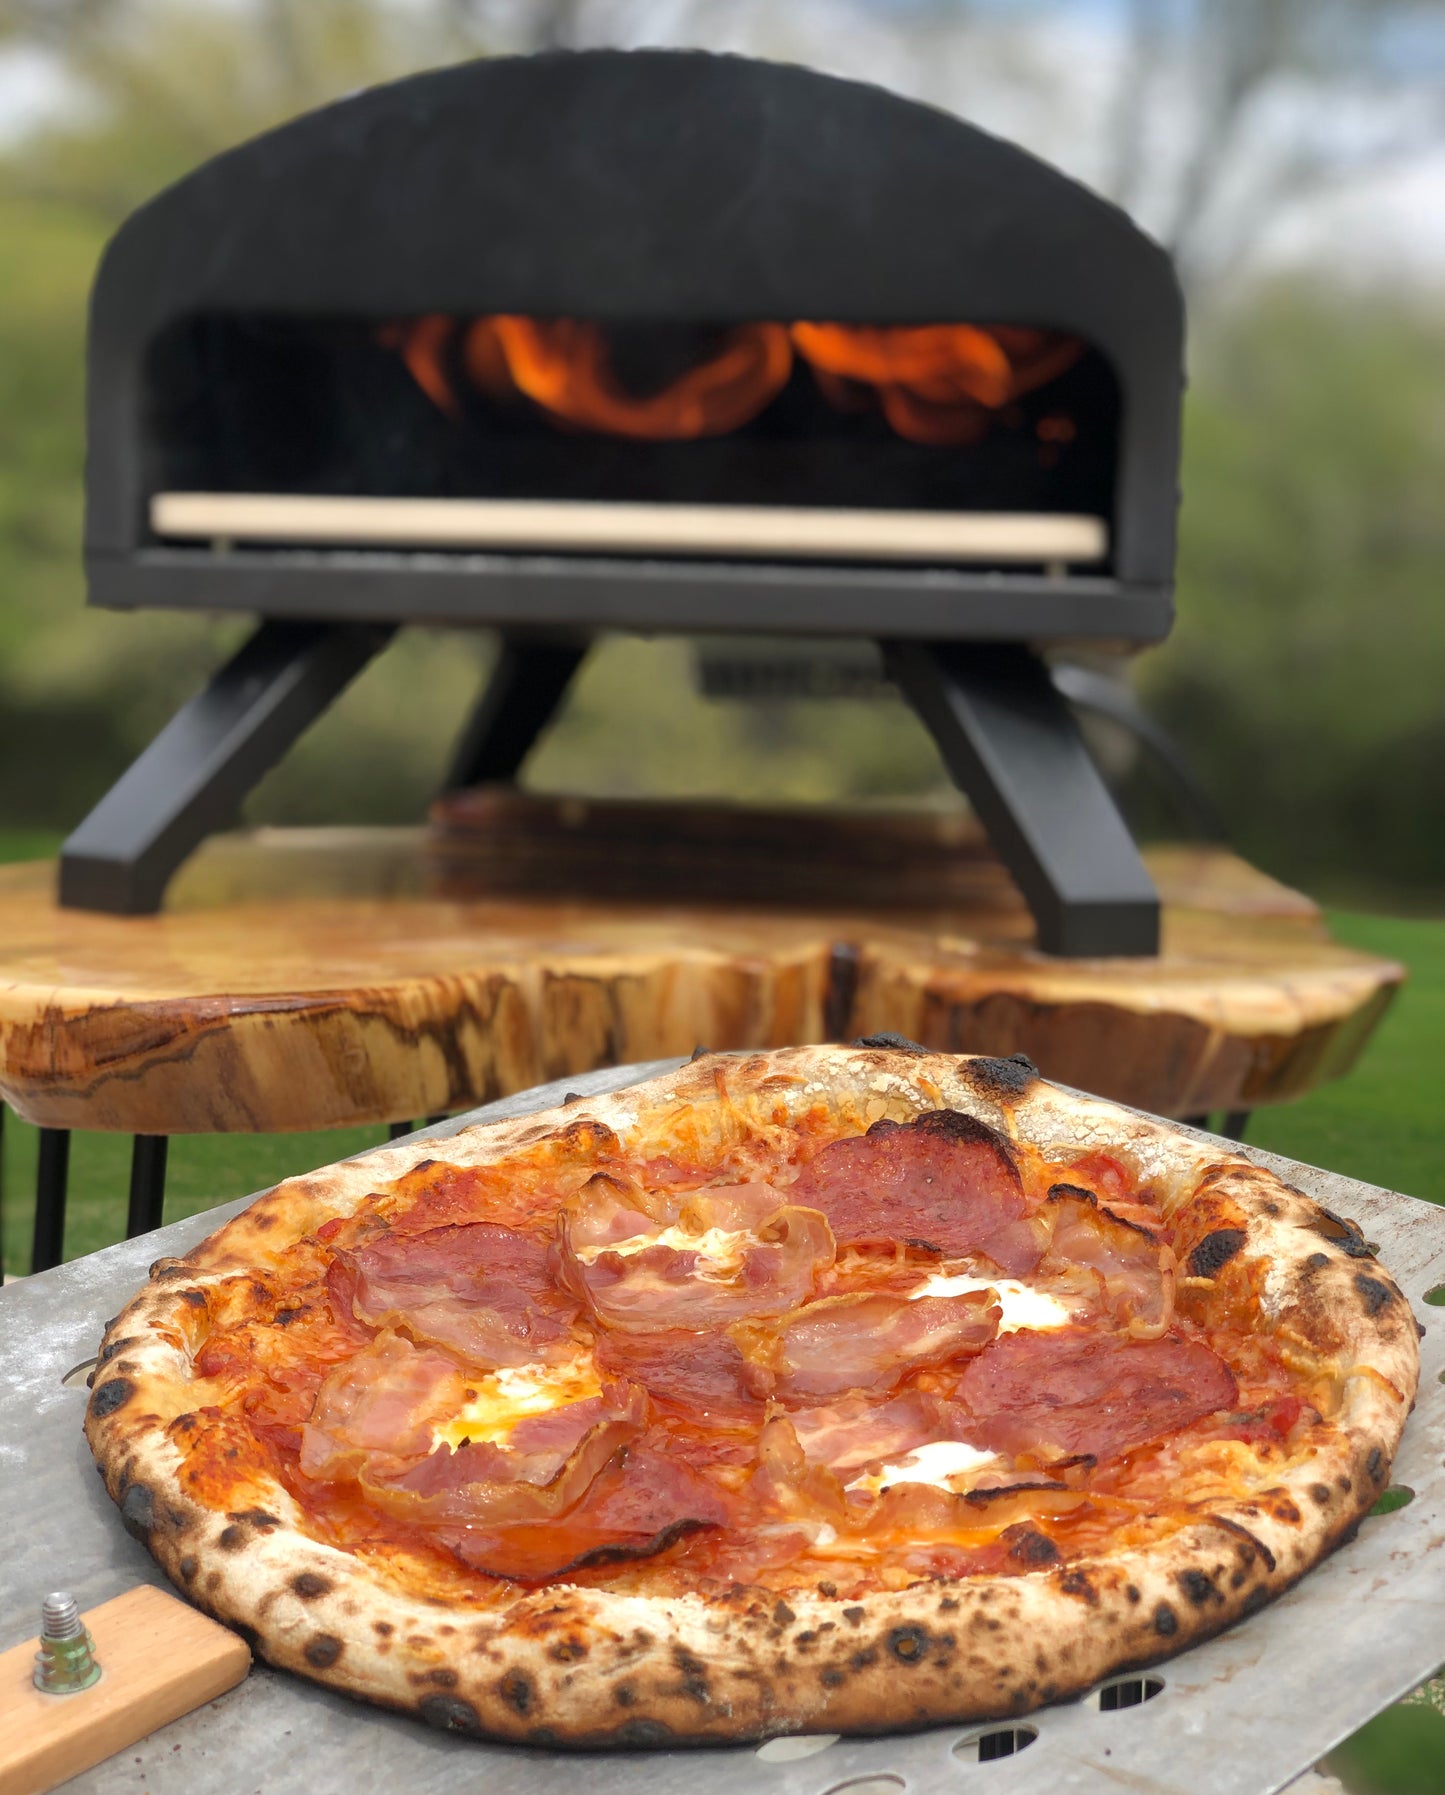 
                  
                    Bertello Outdoor Pizza Oven
                  
                